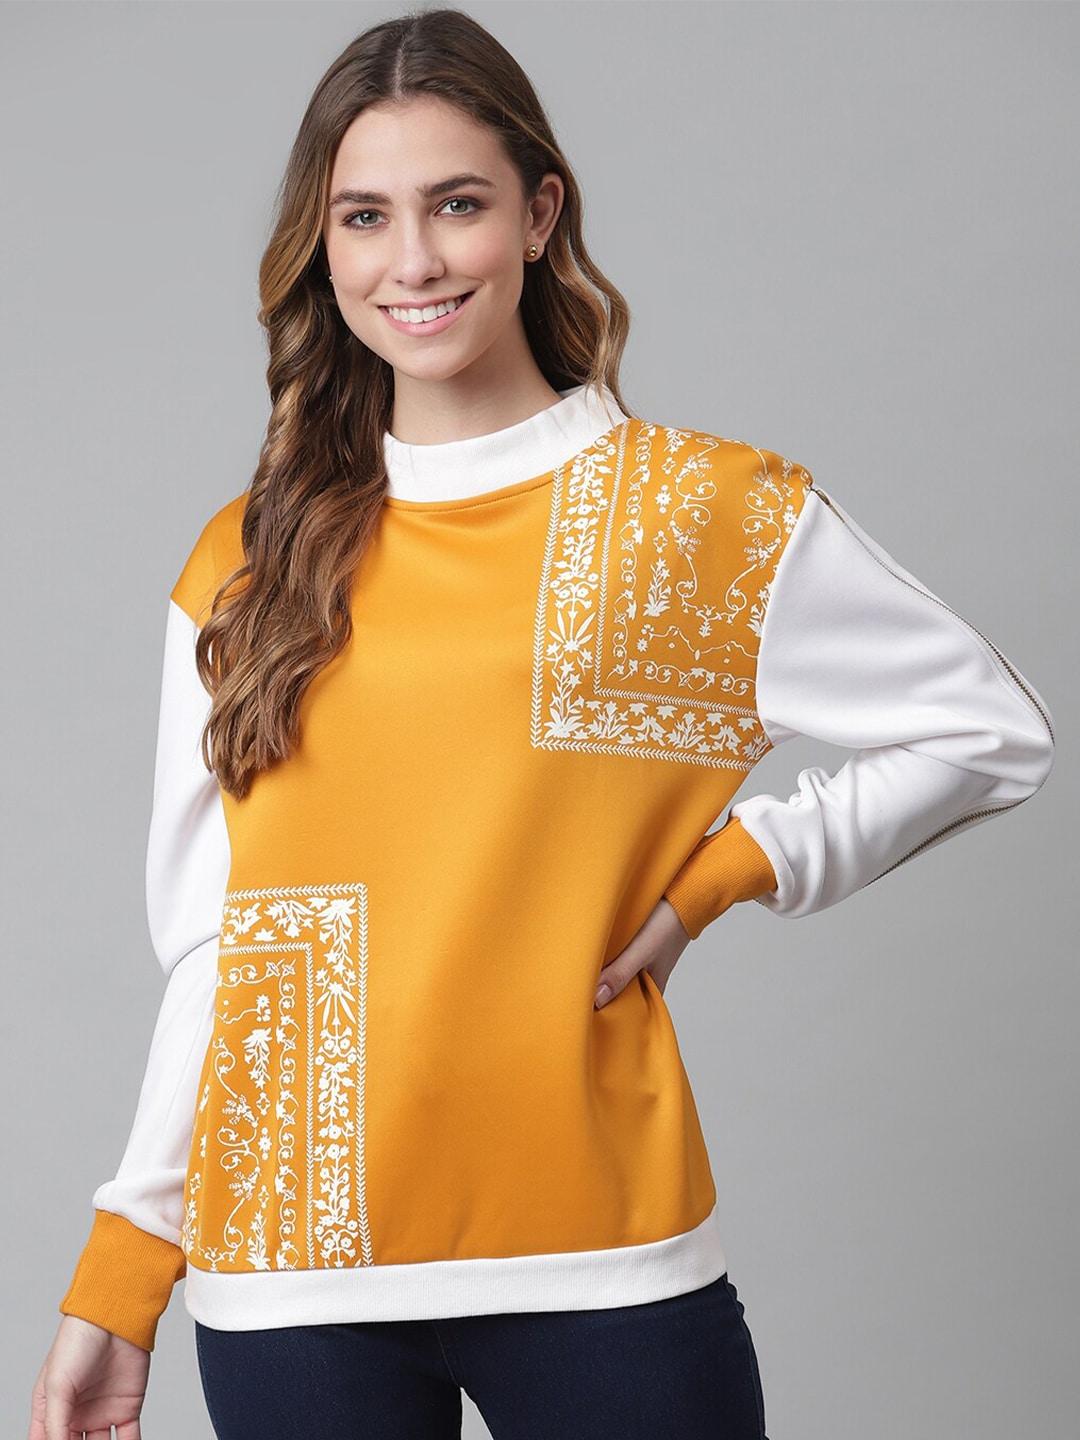 otorva women yellow printed sweatshirt